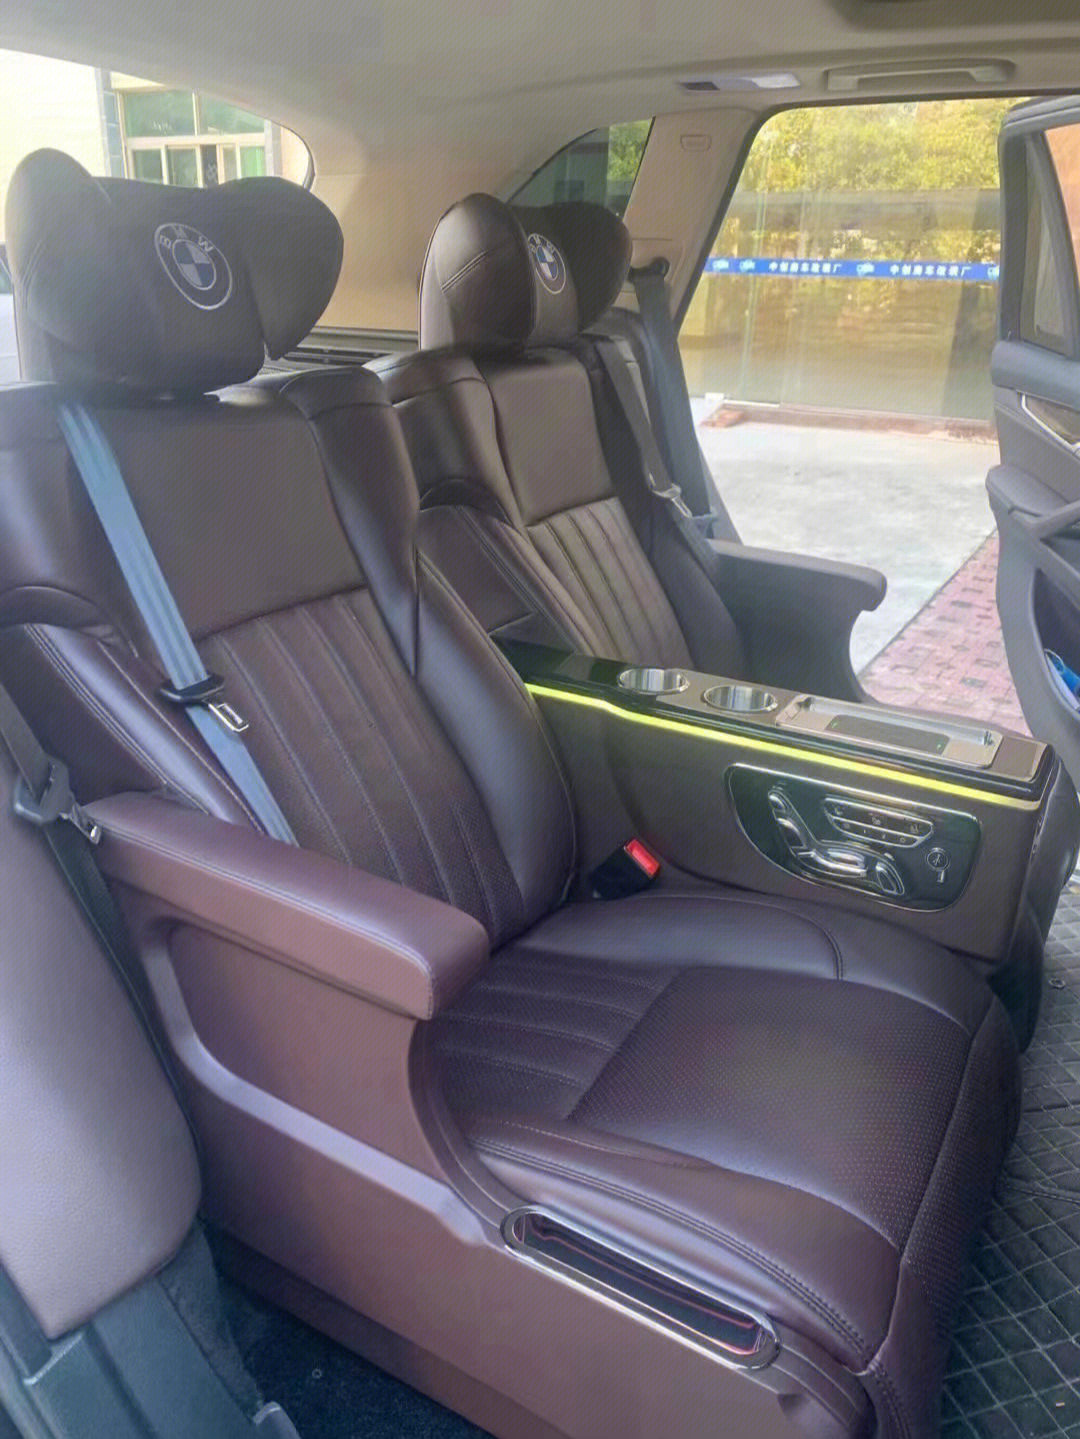 宝马x5全车内饰翻新升级加装航空座椅上海